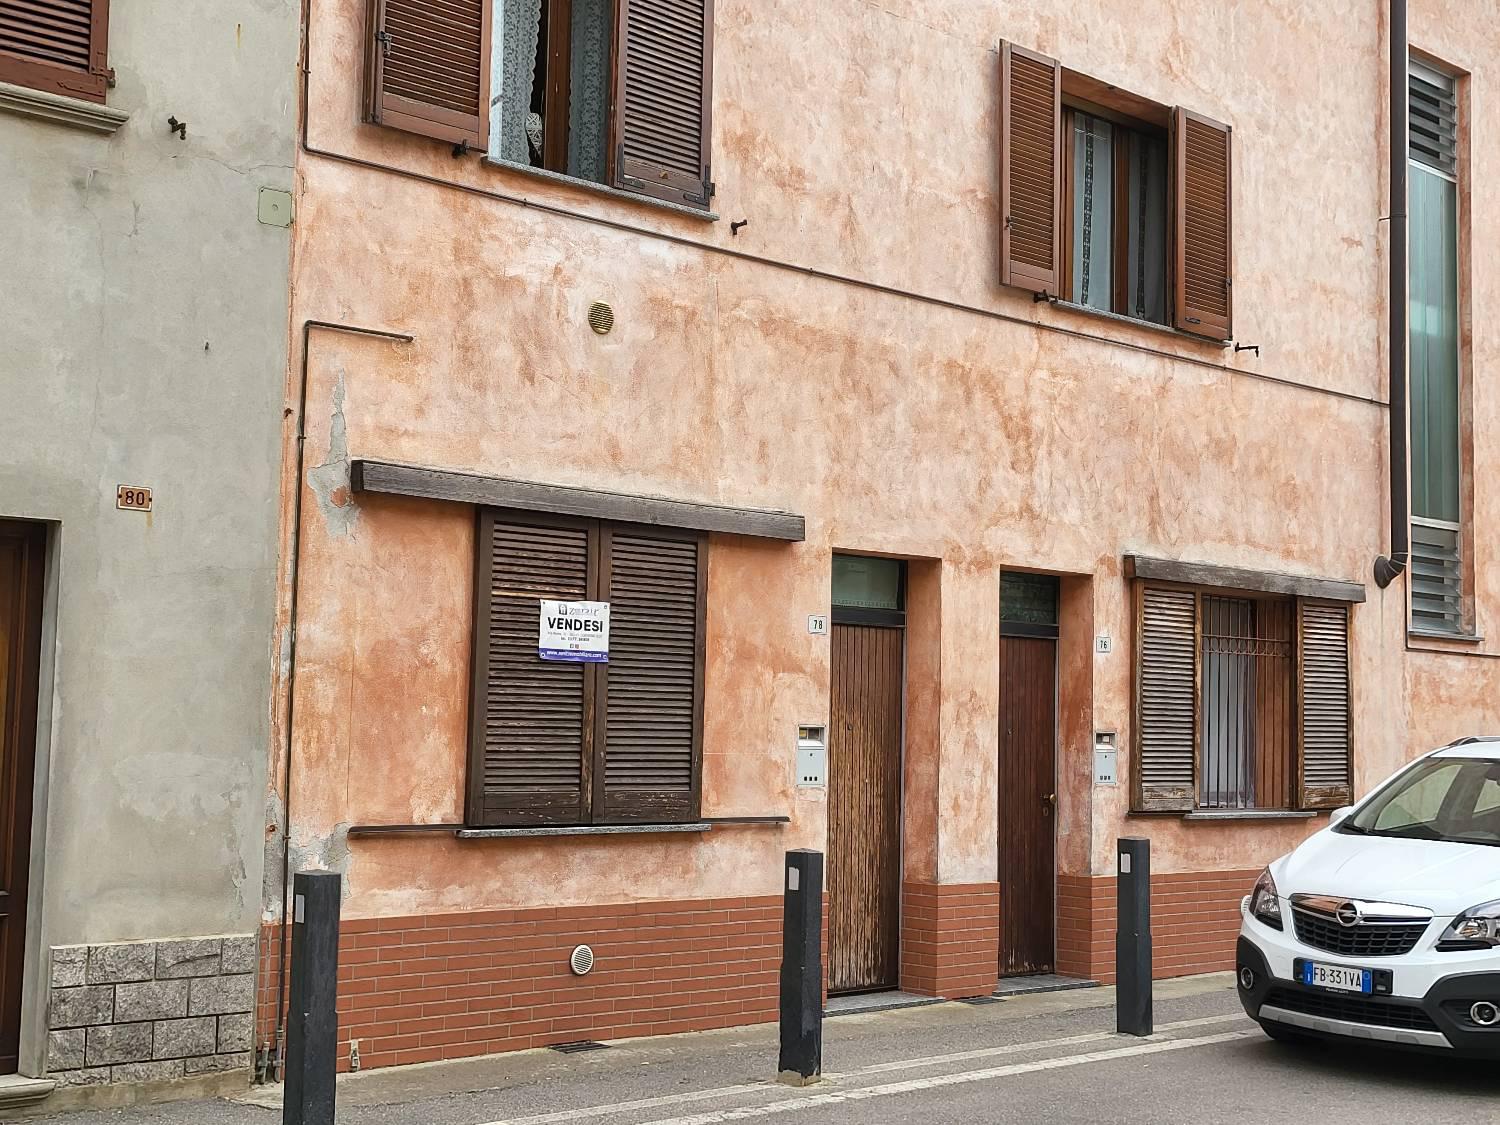 Appartamento in vendita a Castiglione d'Adda, 2 locali, prezzo € 63.000 | CambioCasa.it